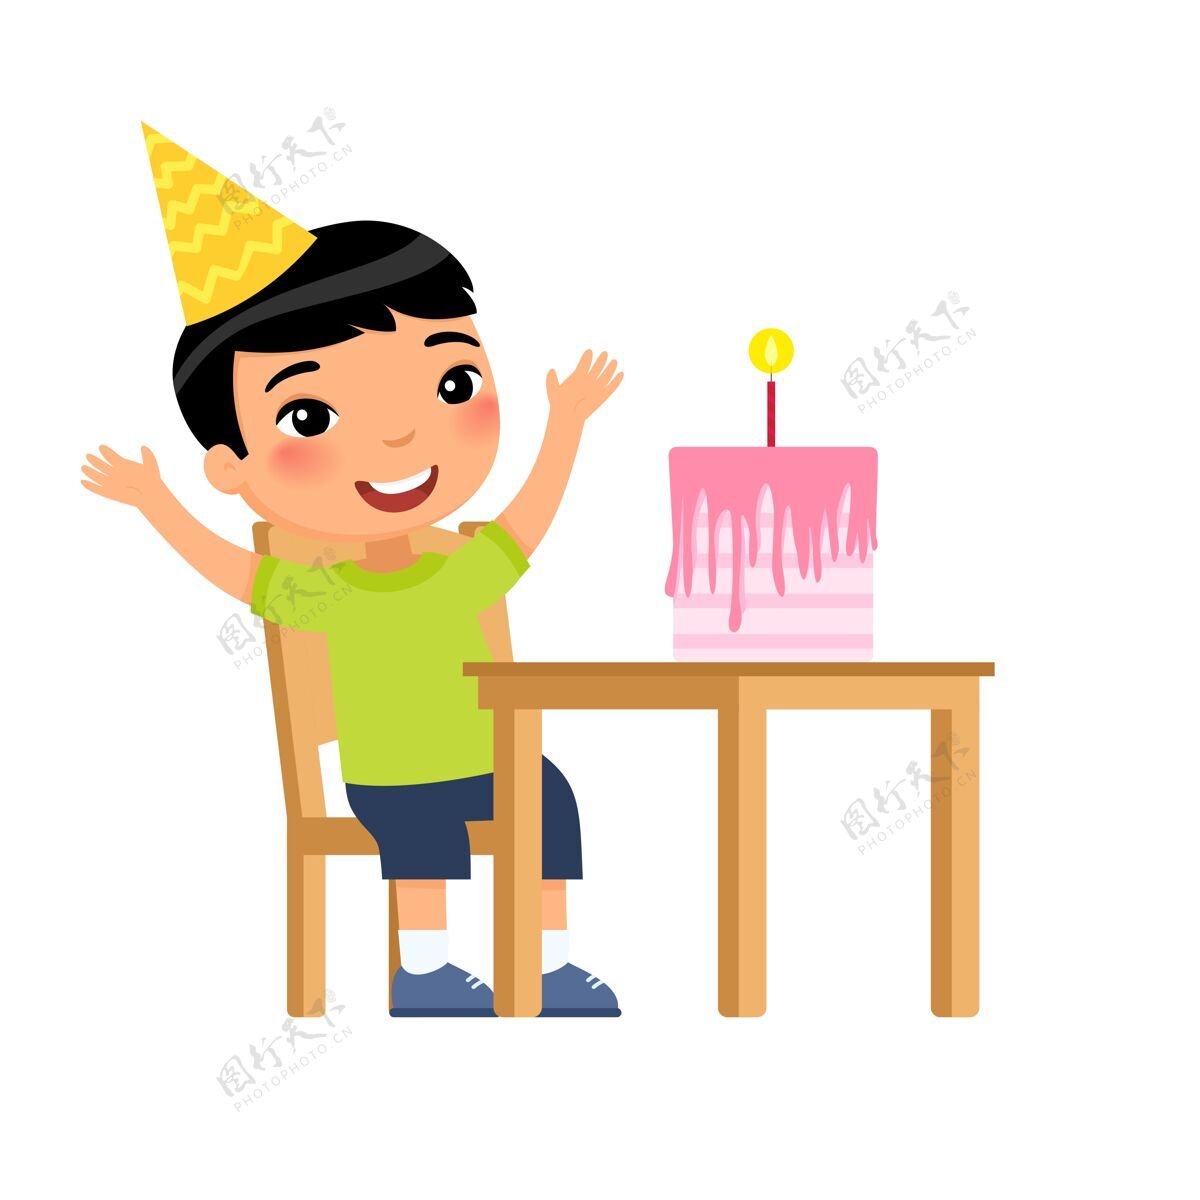 糕点桌上摆着蜡烛生日蛋糕的亚洲小男孩人吹蛋糕